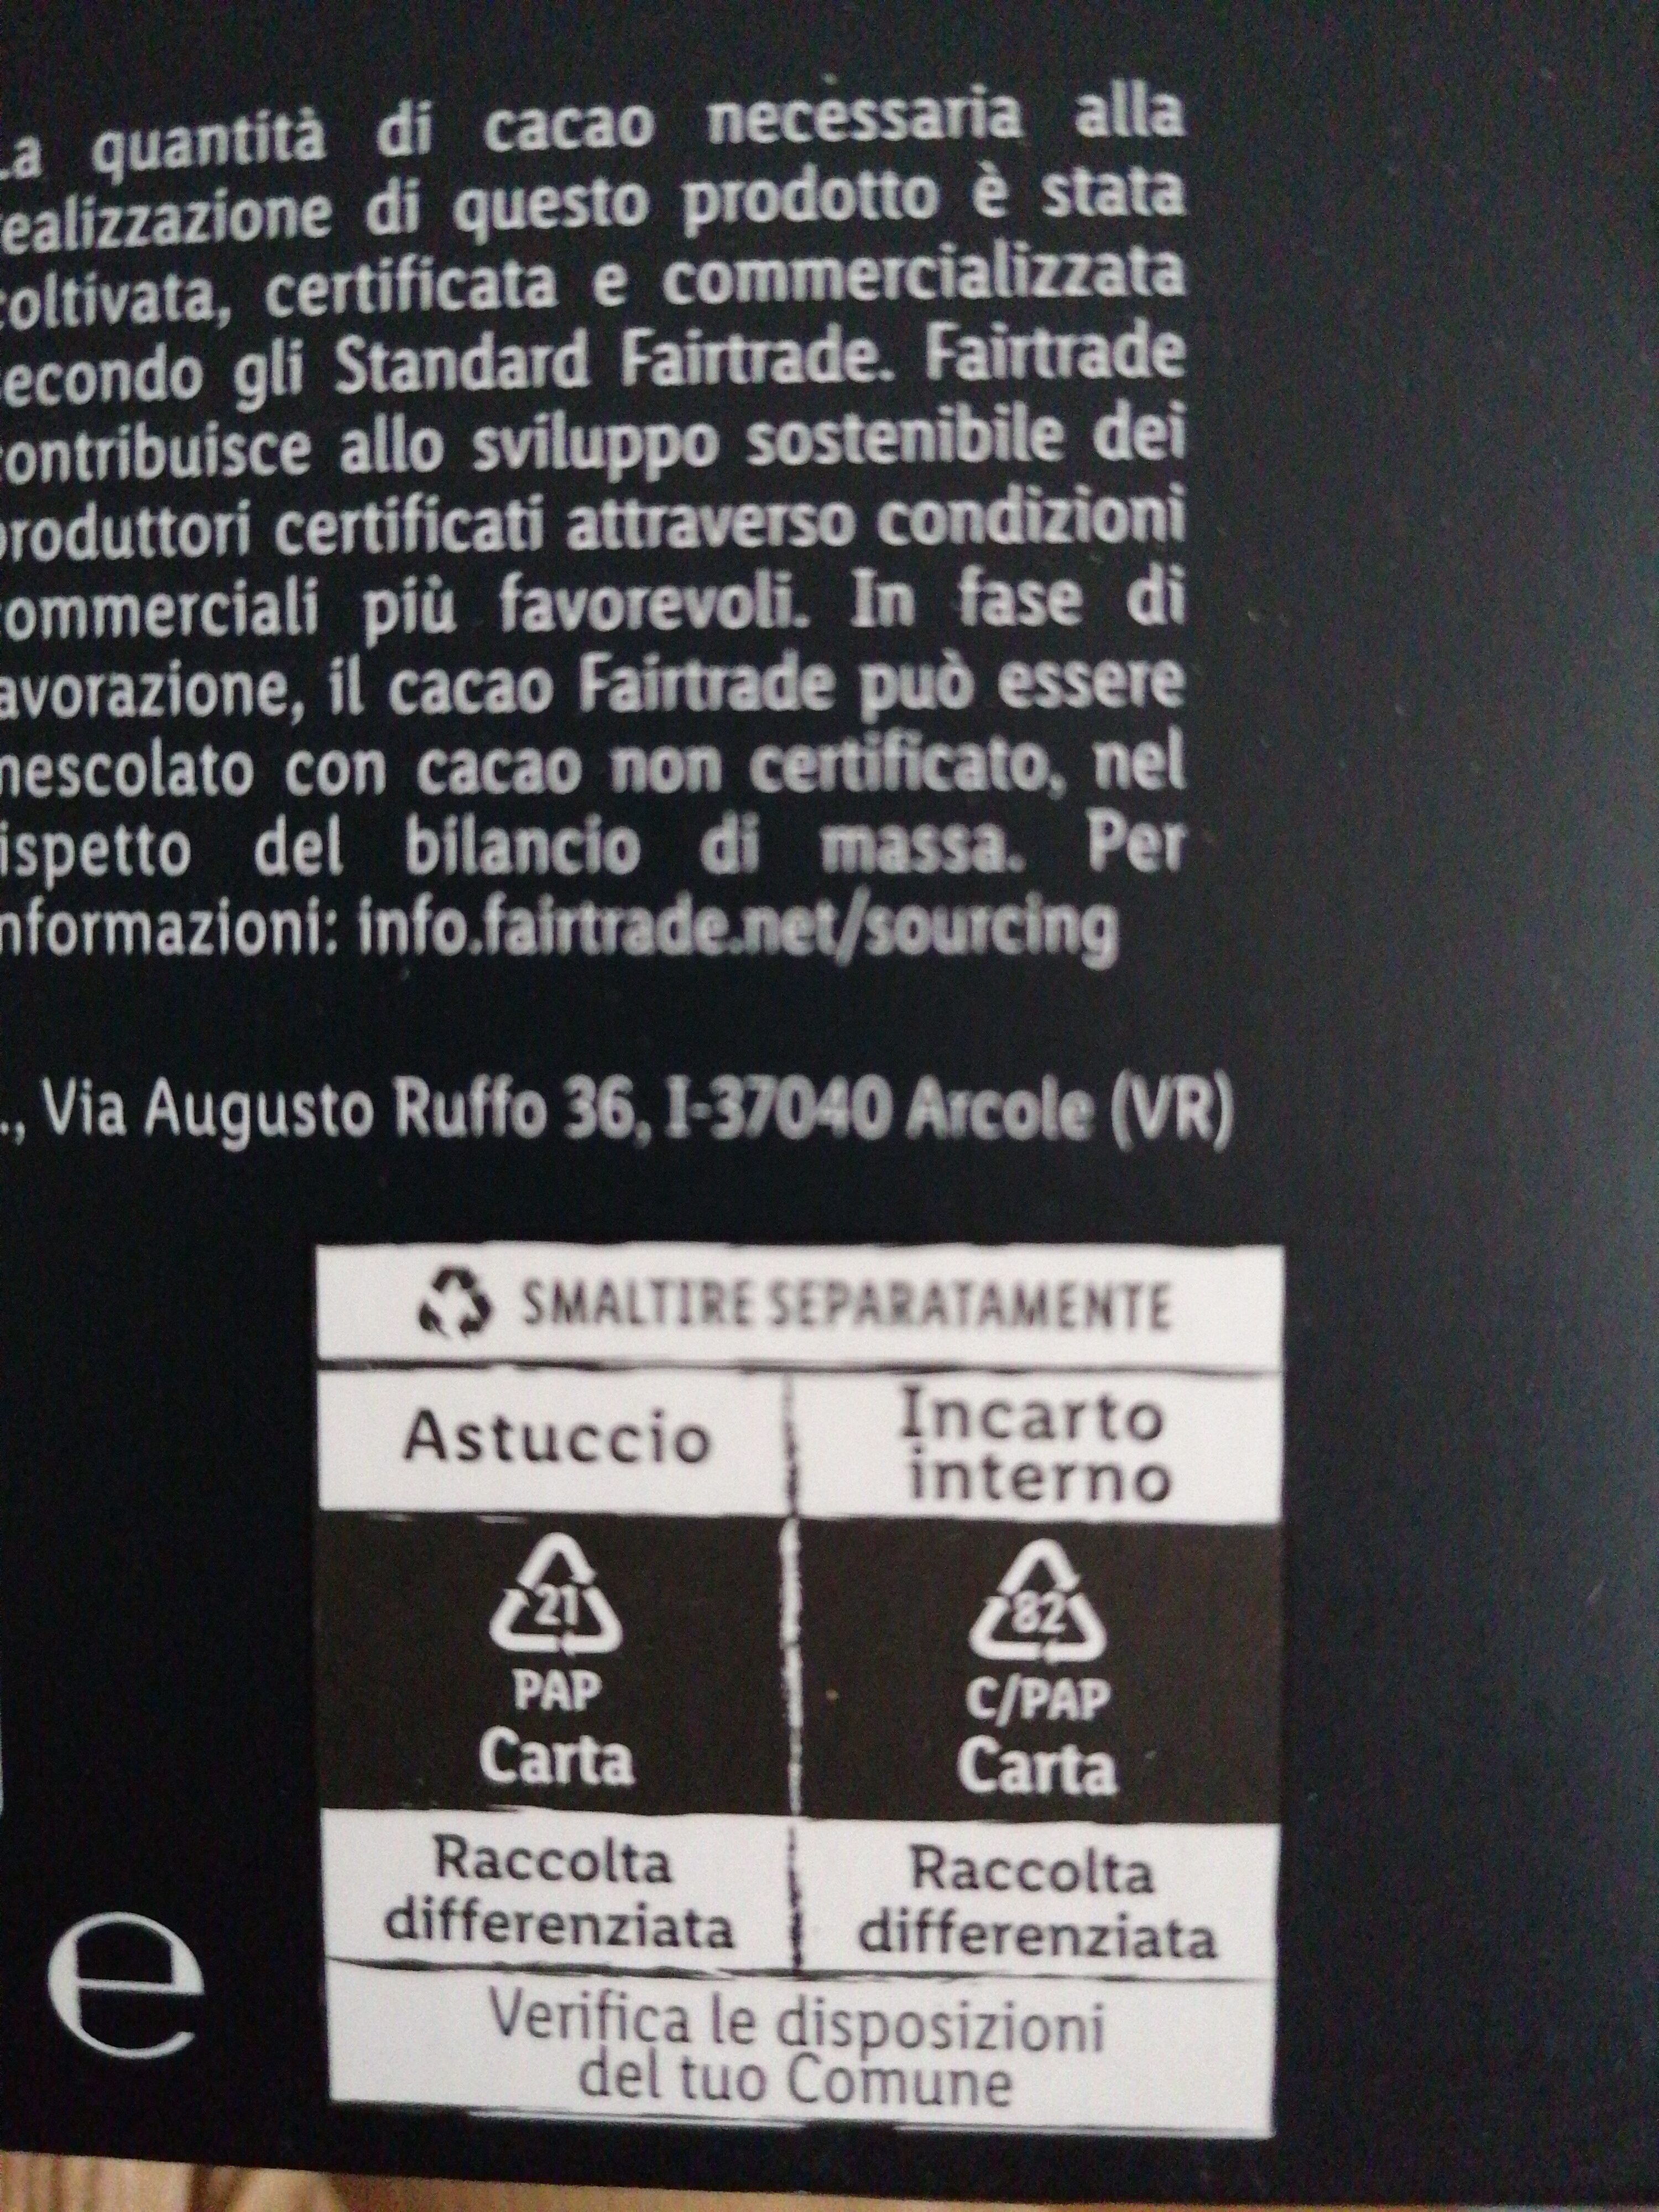 Dark Chocolate - 85% Cocoa - Istruzioni per il riciclaggio e/o informazioni sull'imballaggio